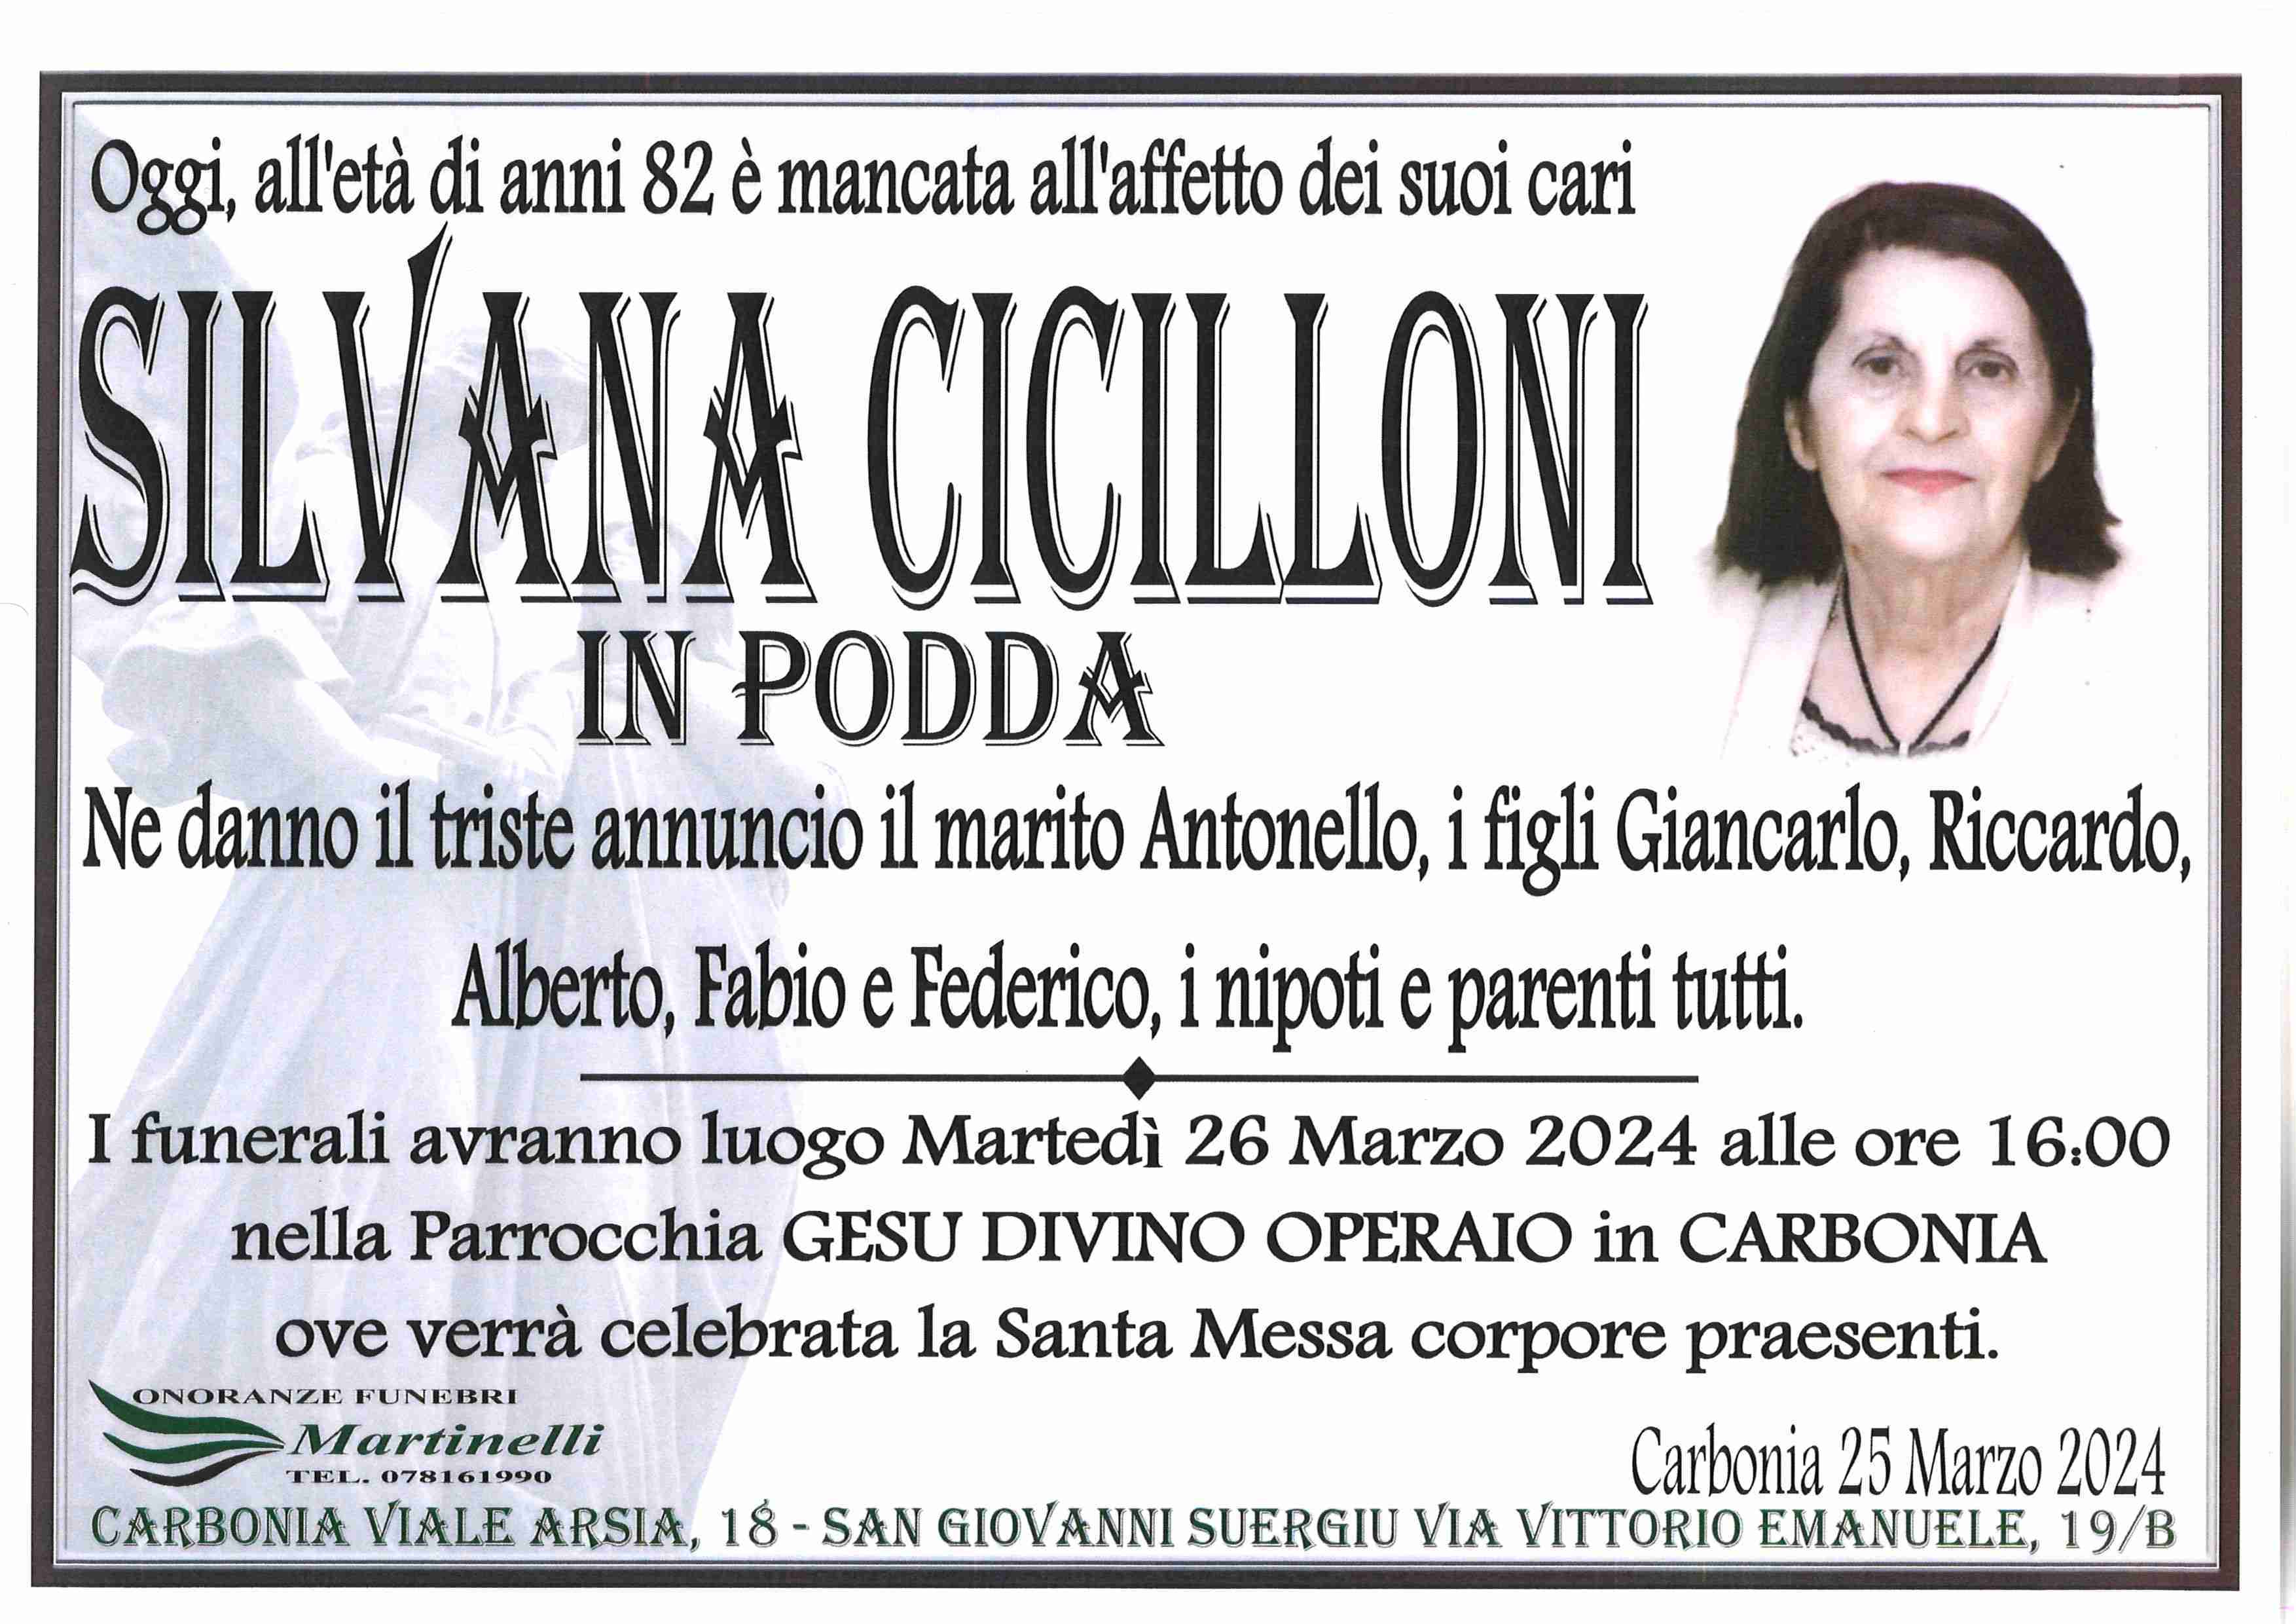 Silvana  Cicilloni